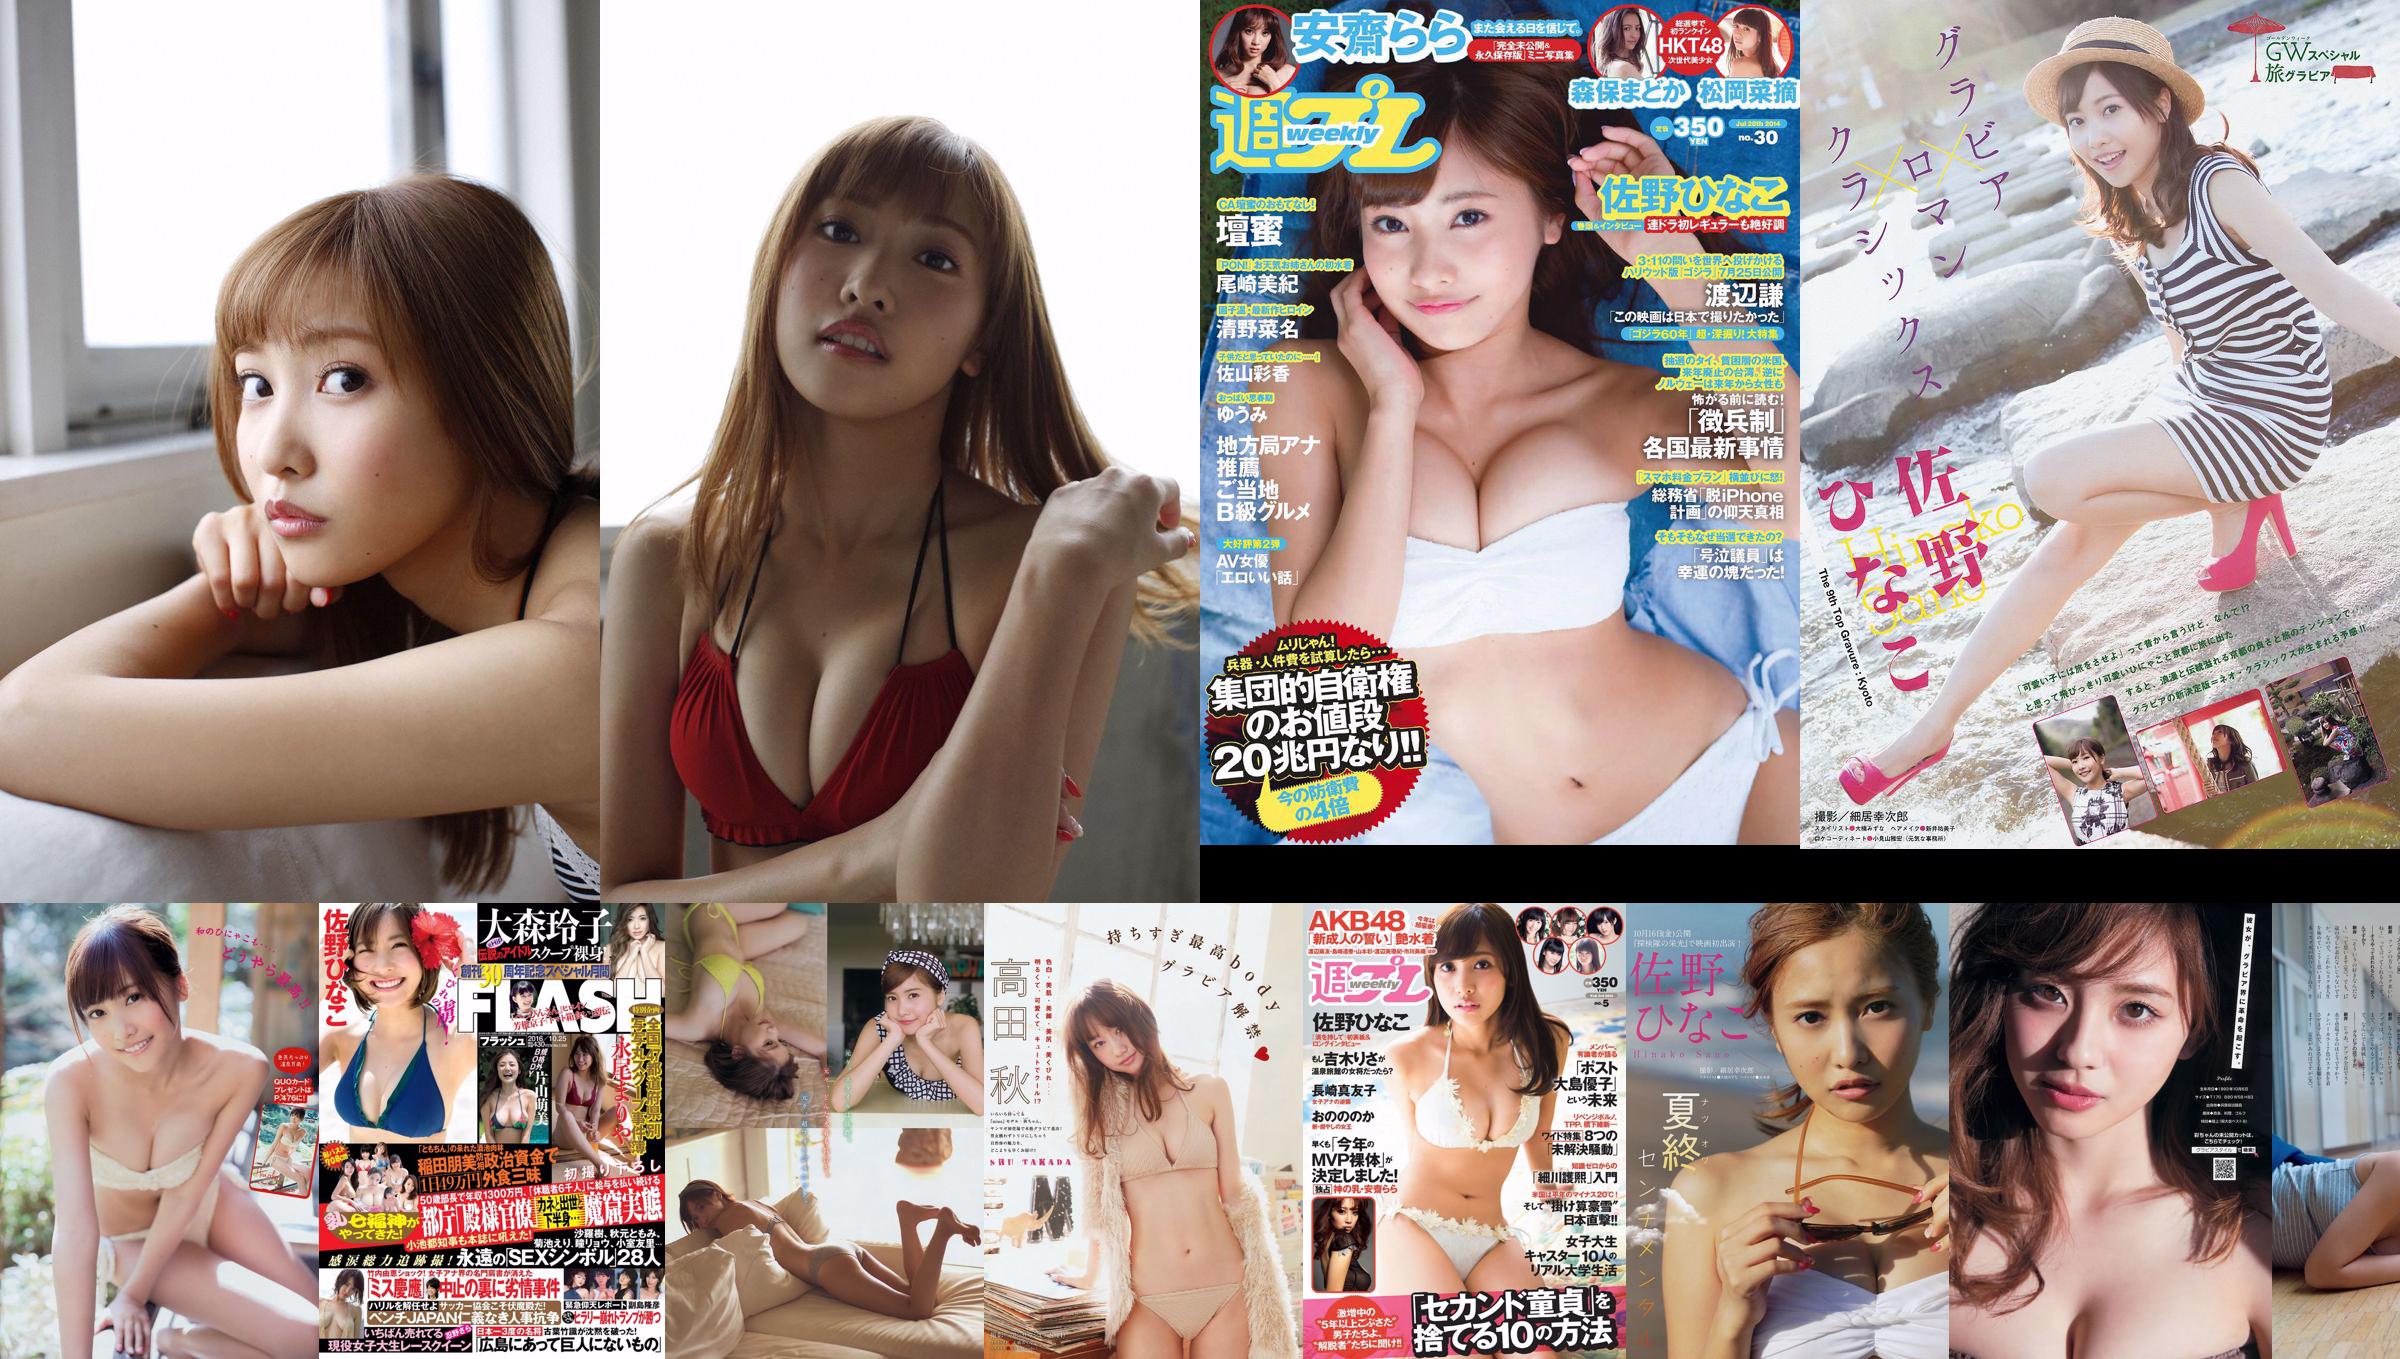 [Young Magazine] Hinako Sano Aya Asahina 2015 No.22-23 Photographie No.2ca80c Page 1